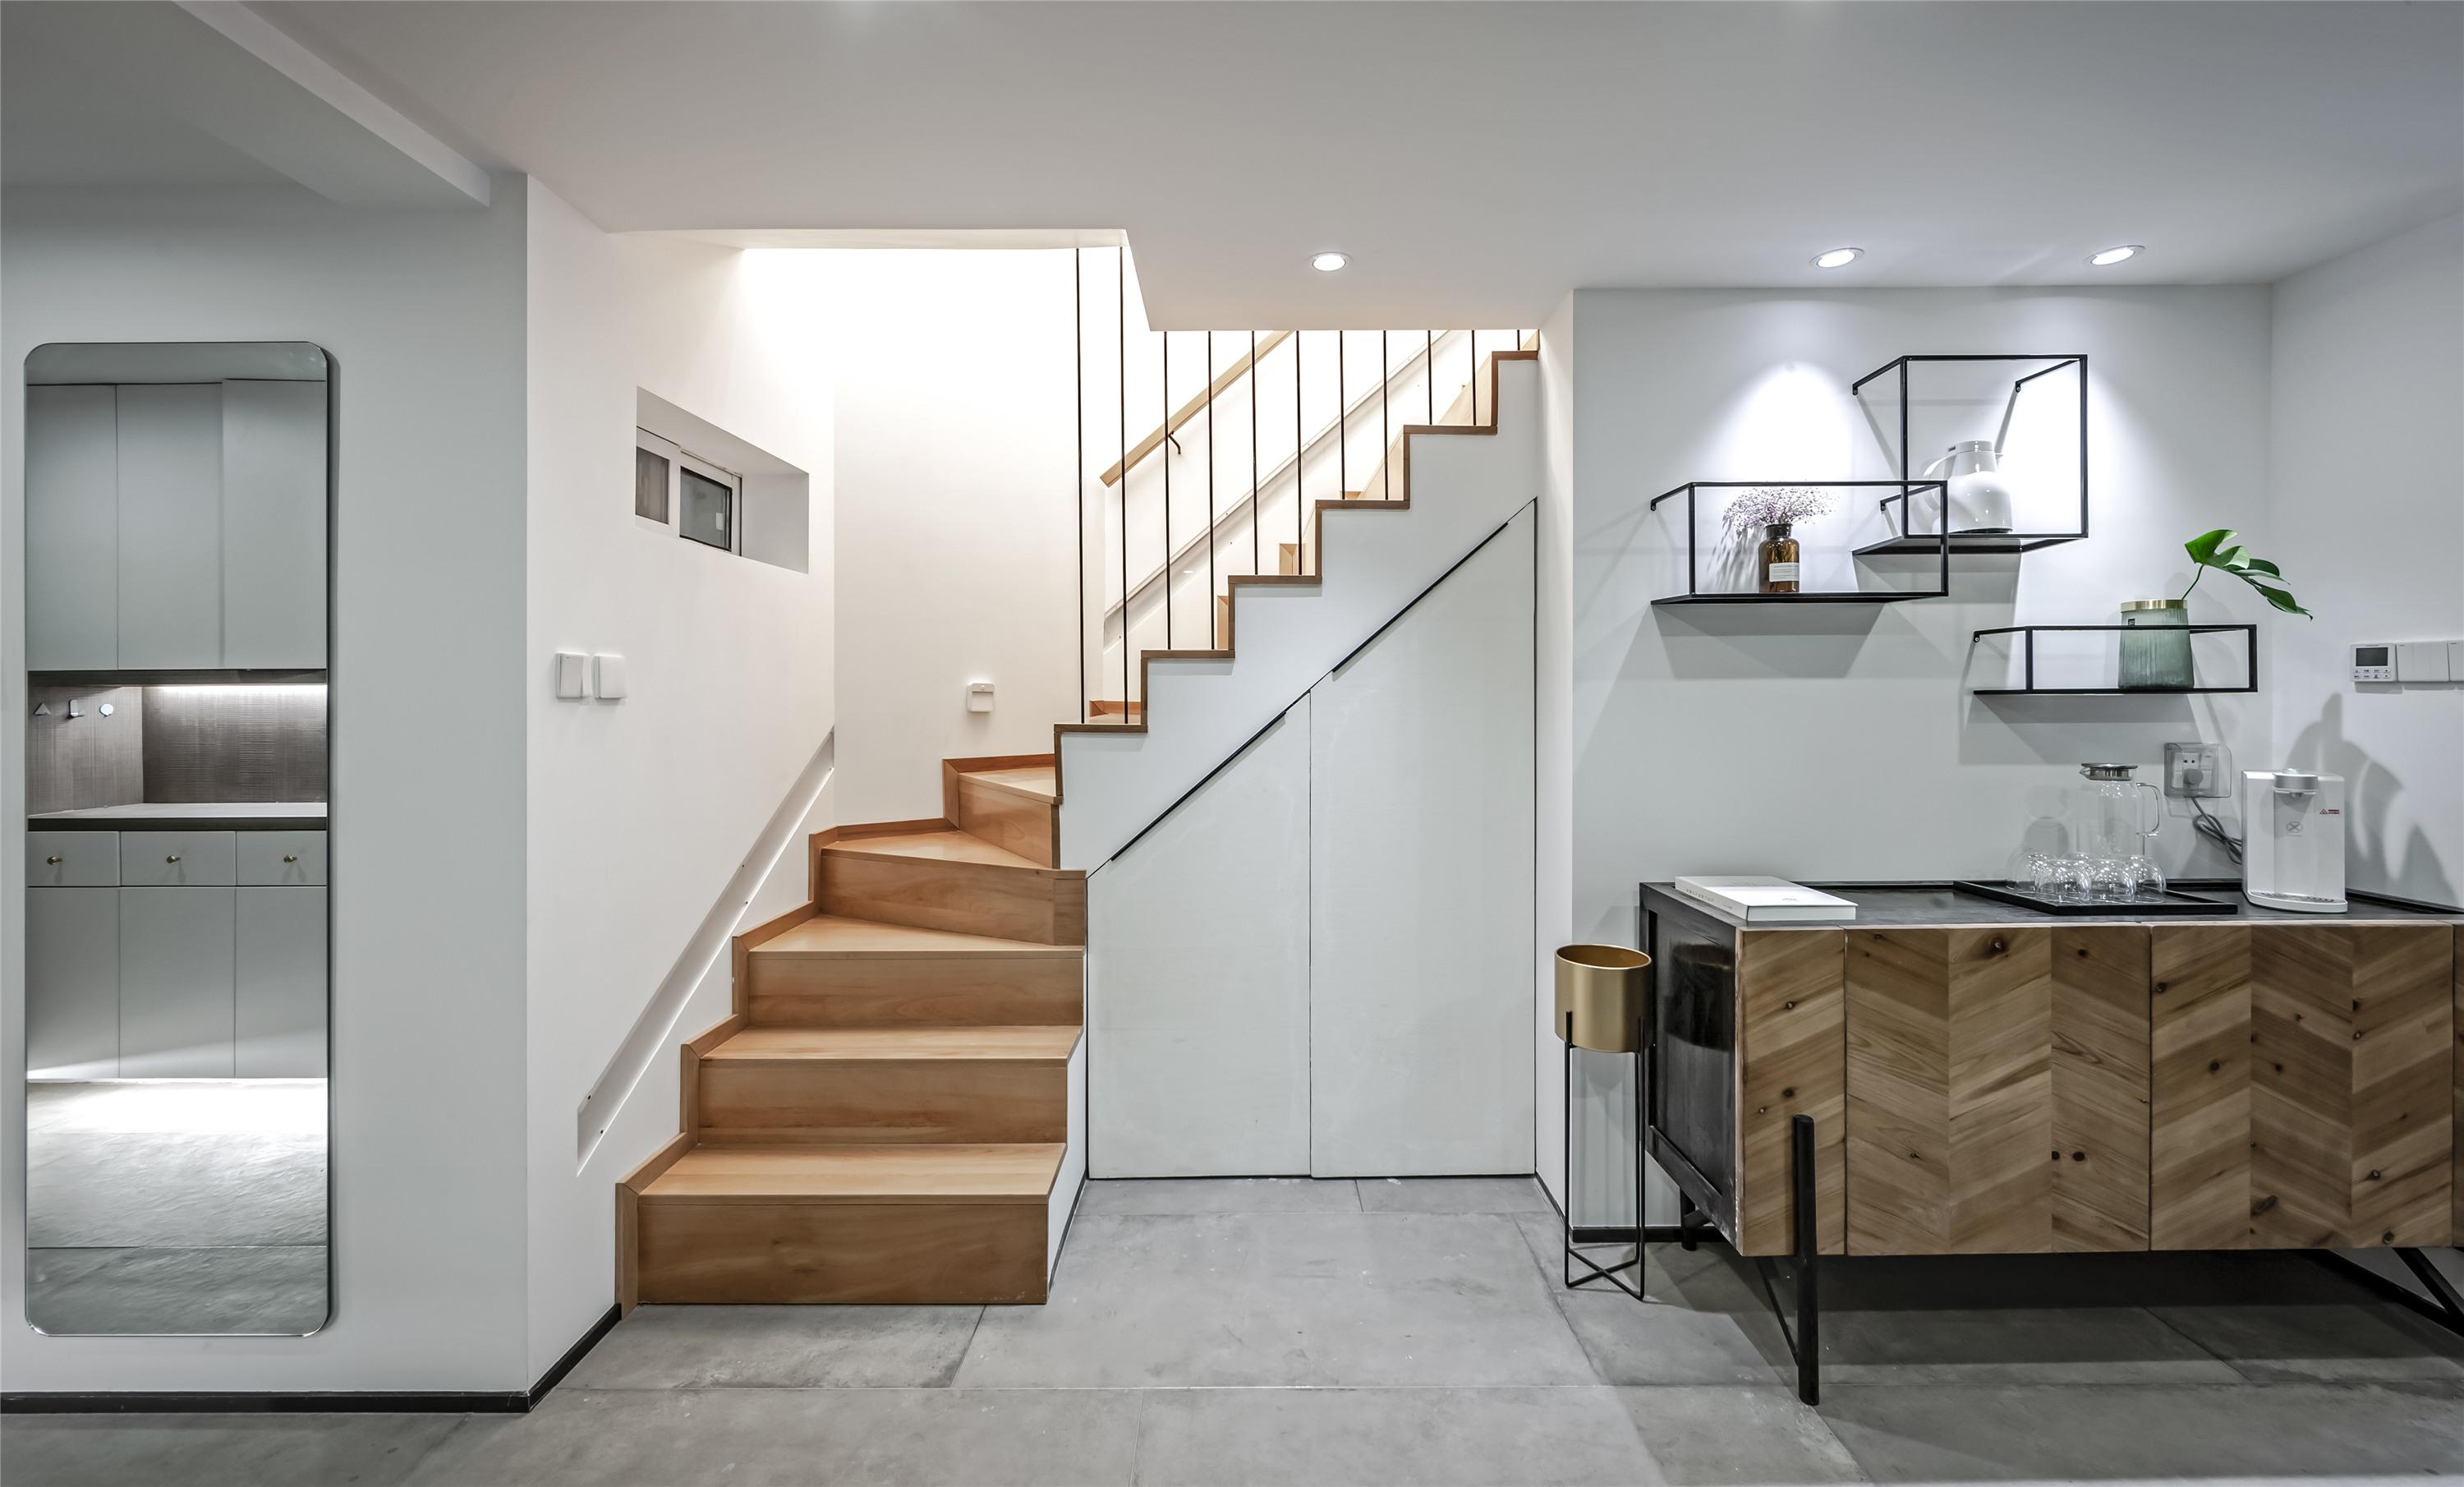 简约欧式复式楼转角楼梯装修效果图 – 设计本装修效果图